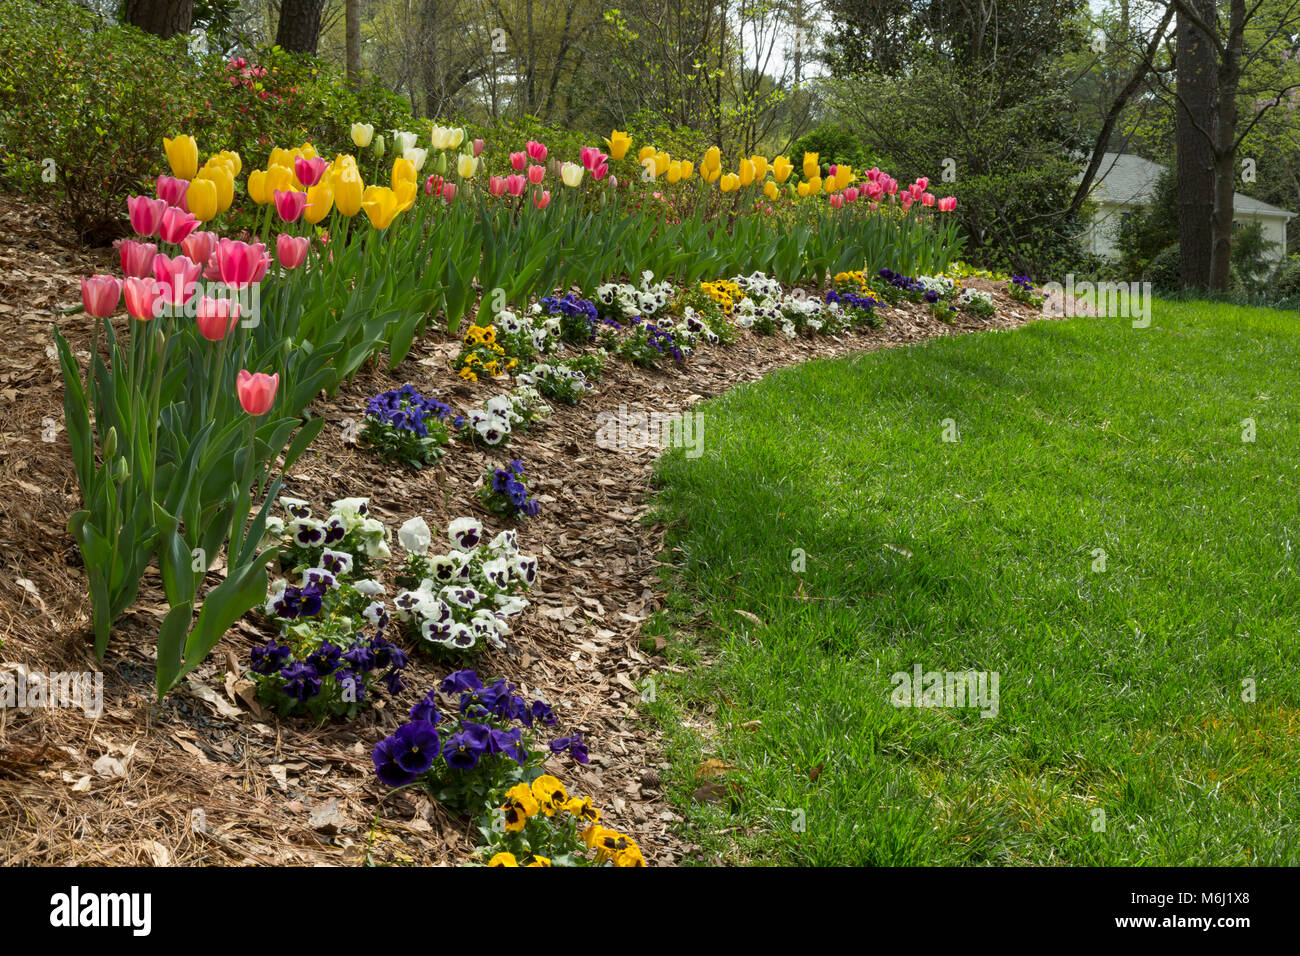 Fleurs de Printemps dans la cour résidentielle privée, tulipes colorées, Pétunias, l'herbe verte. Beau paysage de printemps sud des Etats-Unis Banque D'Images